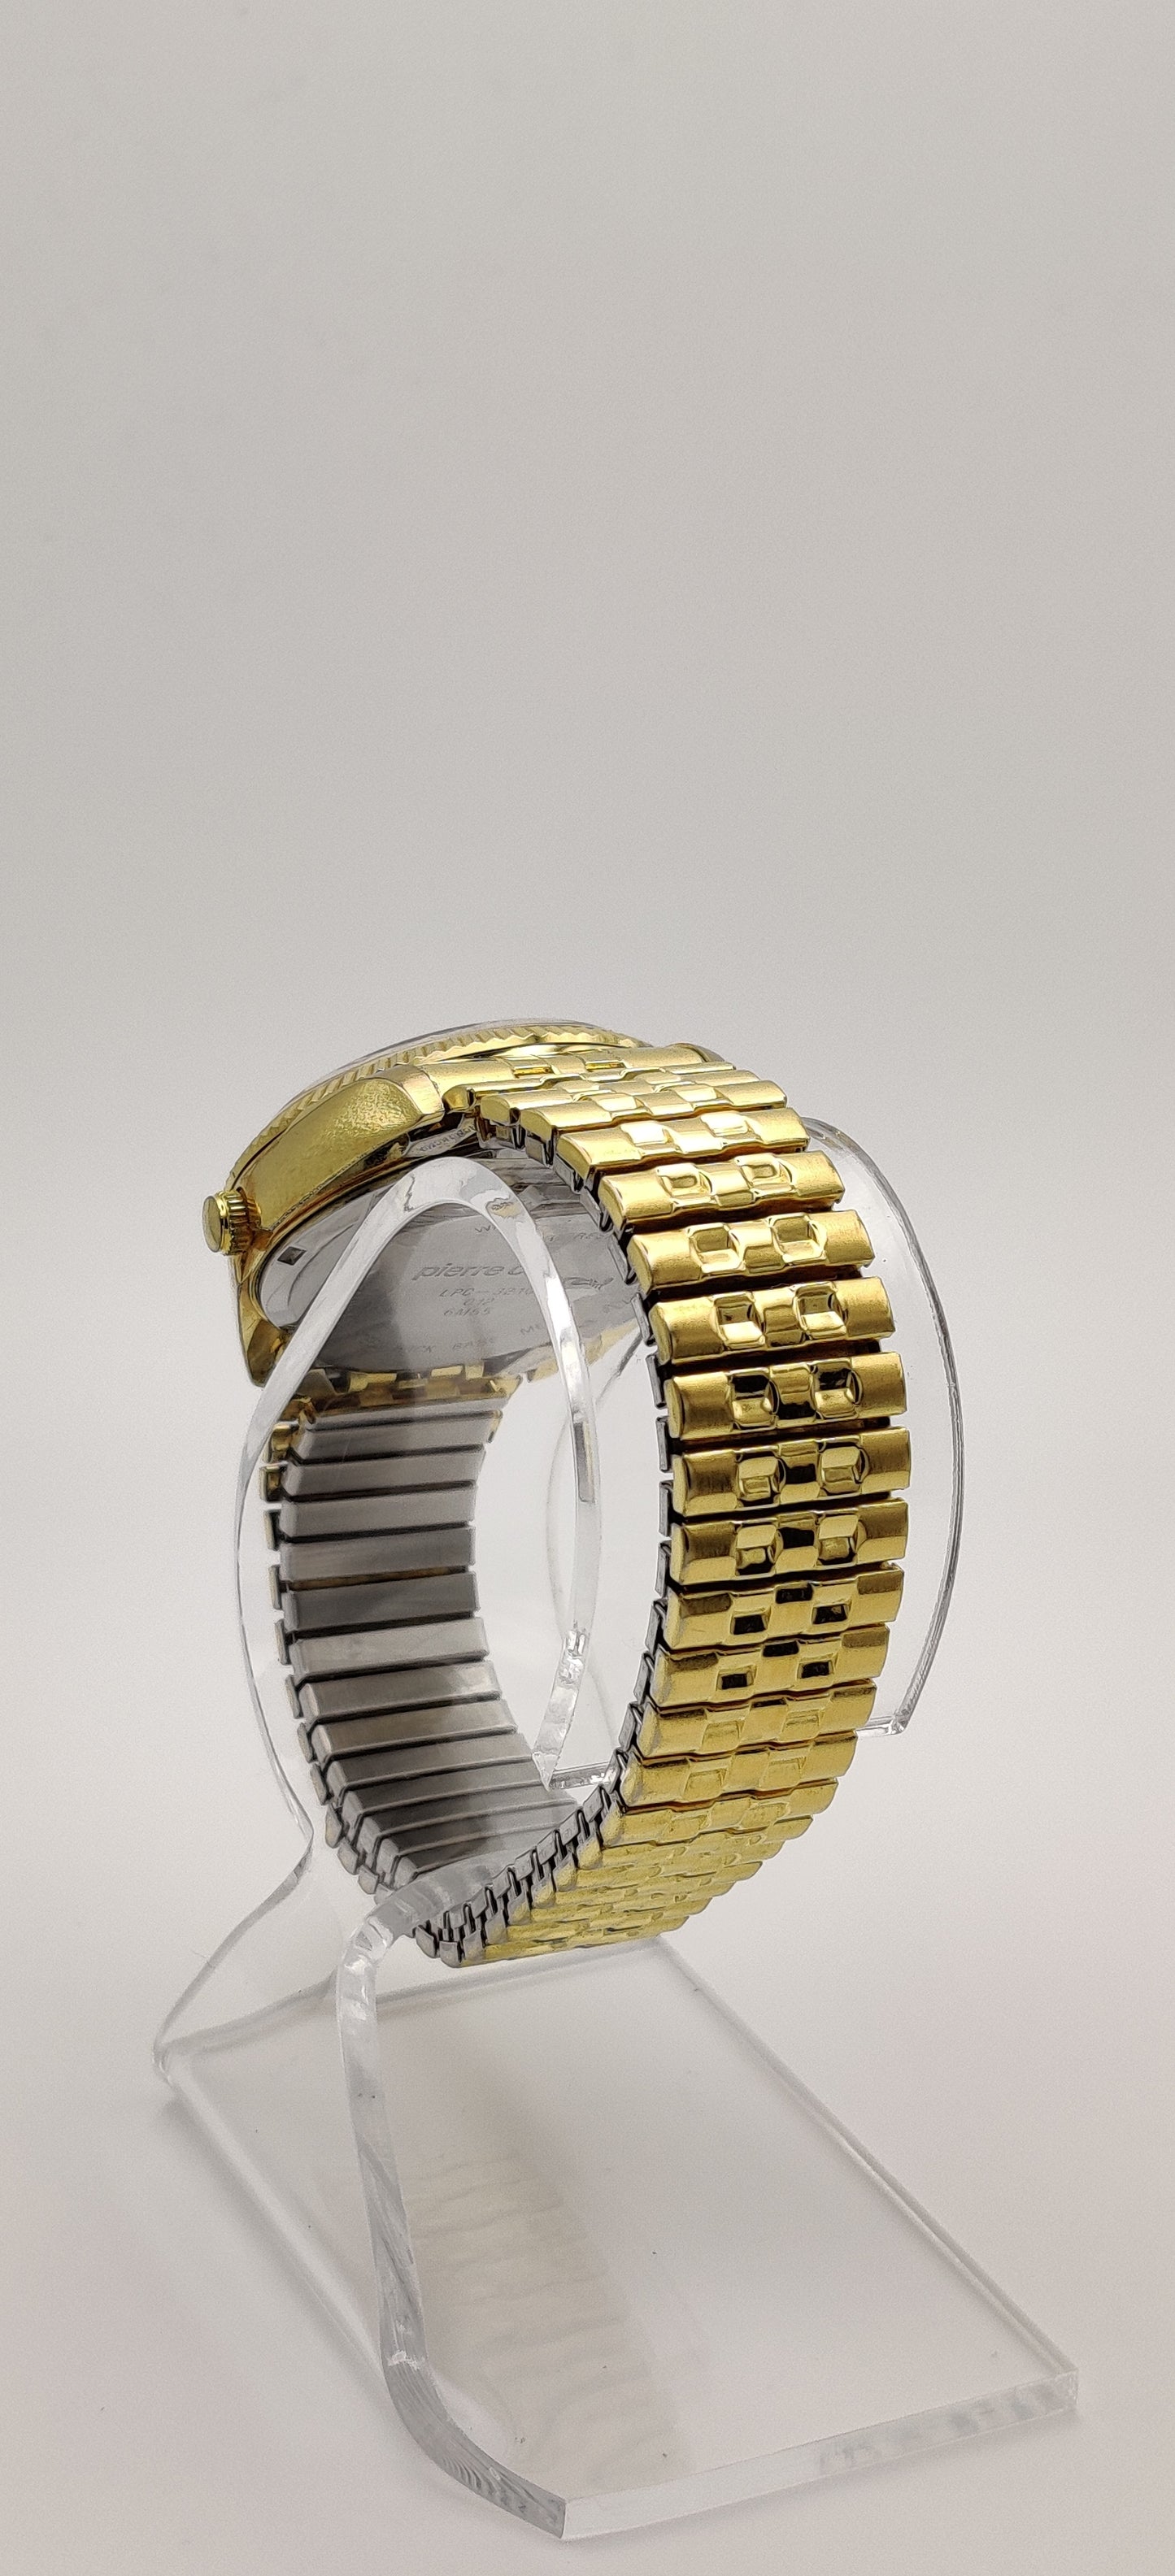 Vintage Pierre Cardin Gold-Tone Men's Watch